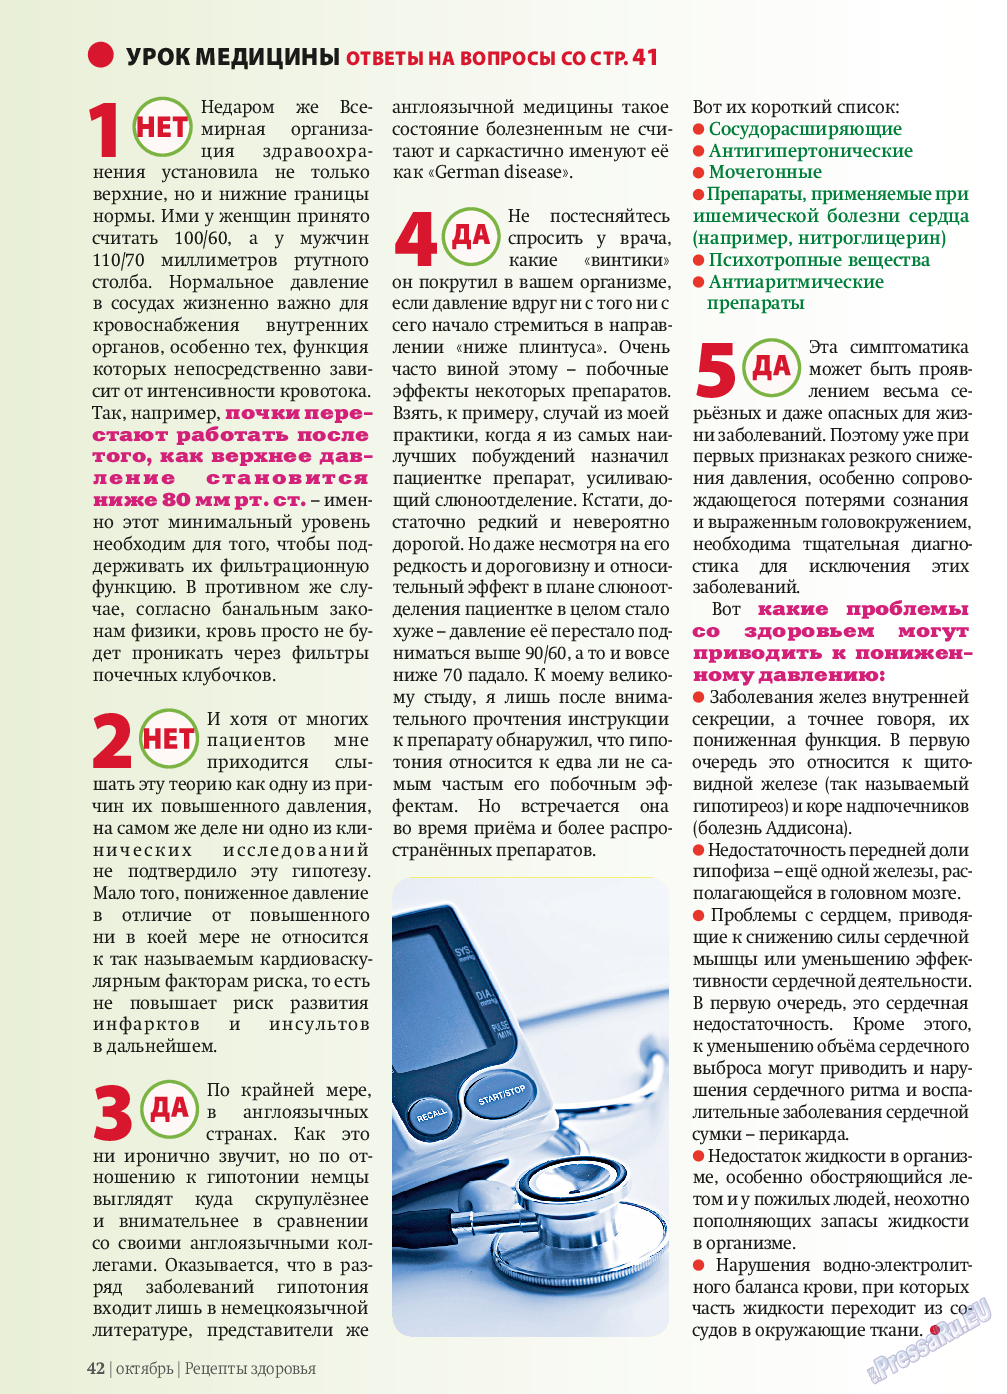 Рецепты здоровья, журнал. 2013 №10 стр.42